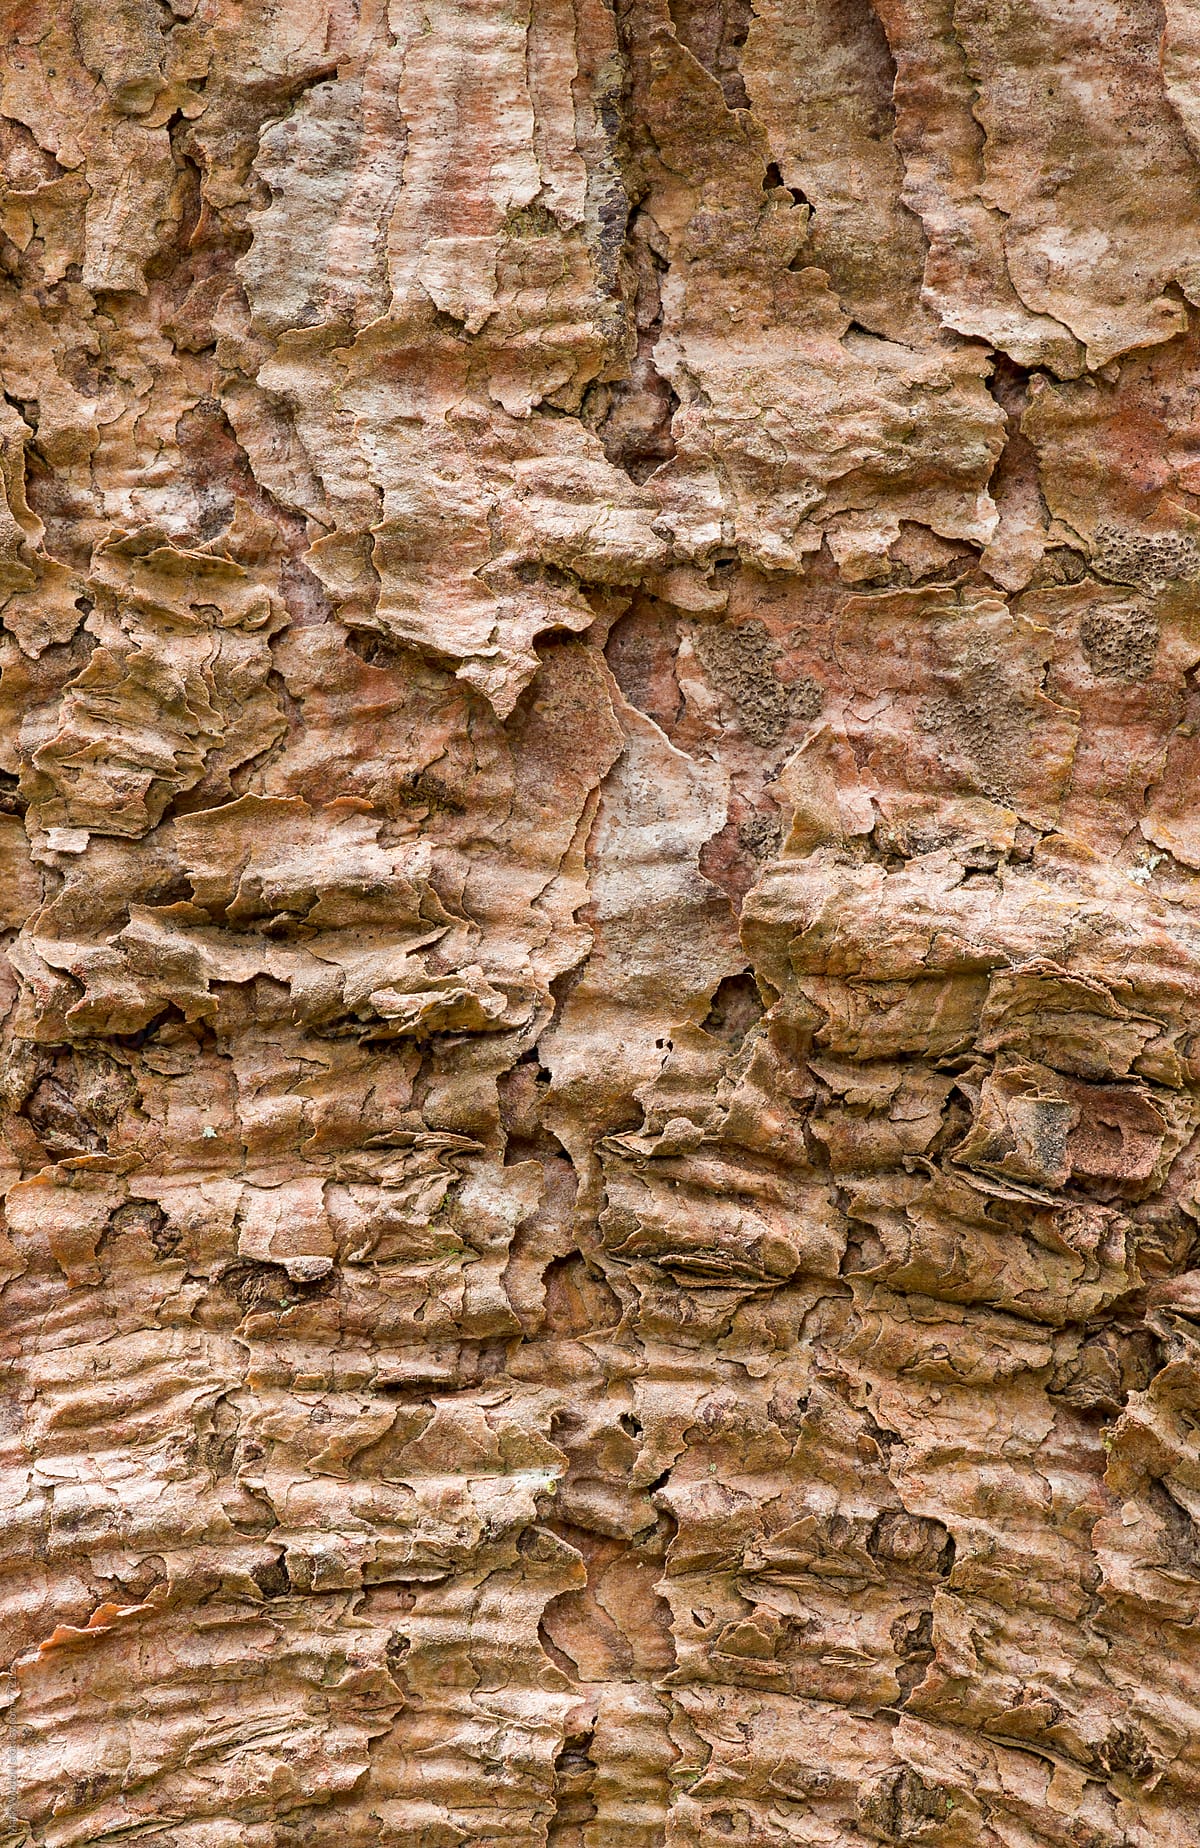 Spruce bark textures, closeup